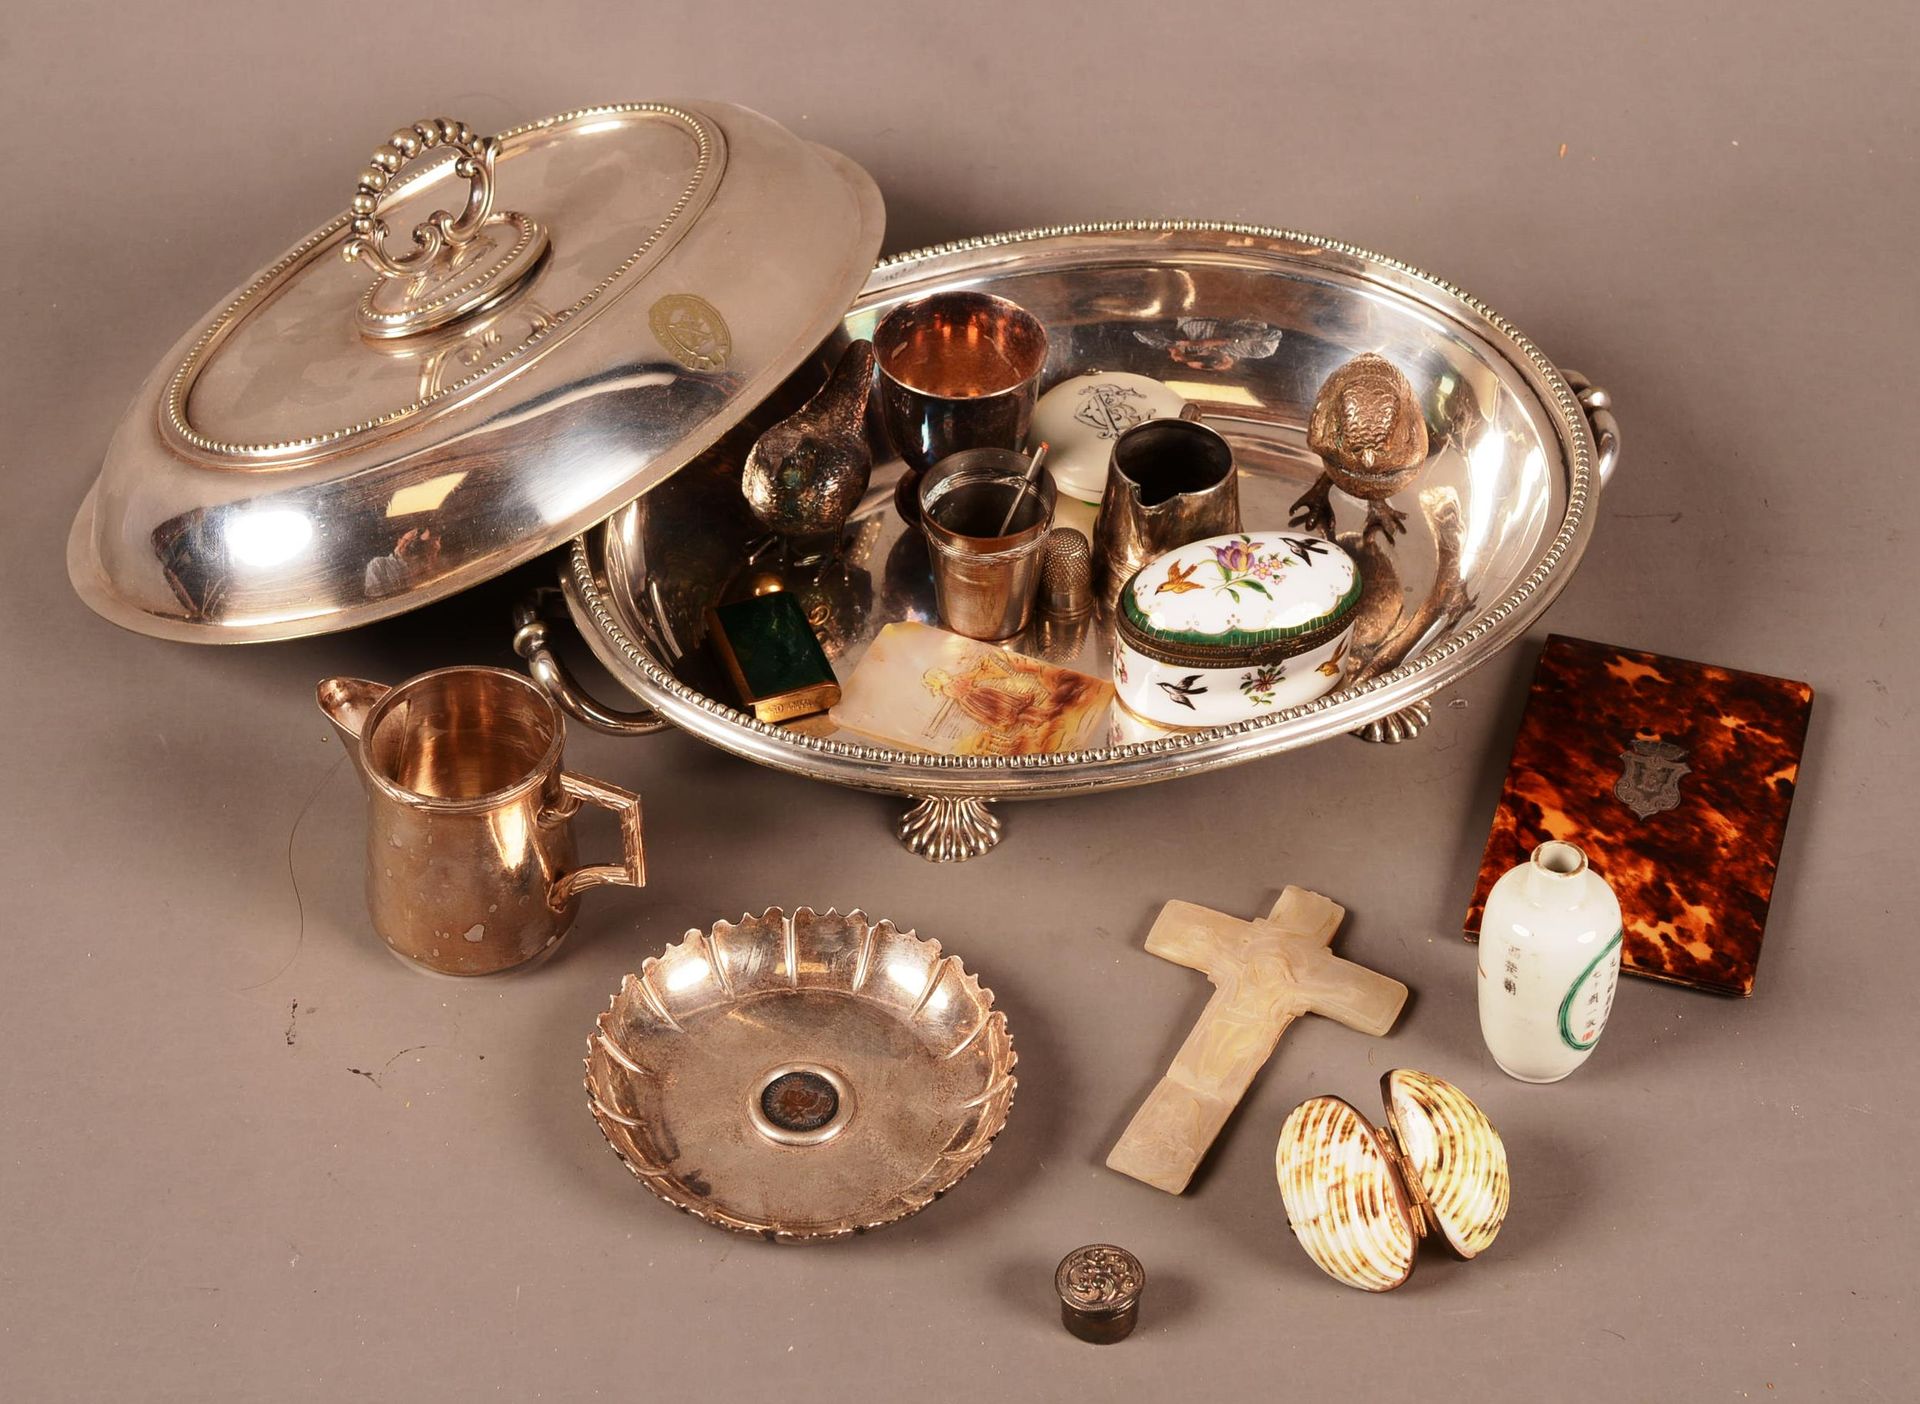 Fond de tiroir 抽屉底部包含在一个有盖的镀银蔬菜盘中，包括

银钳子 - 瓷盒 - 珍珠母盒 - ......